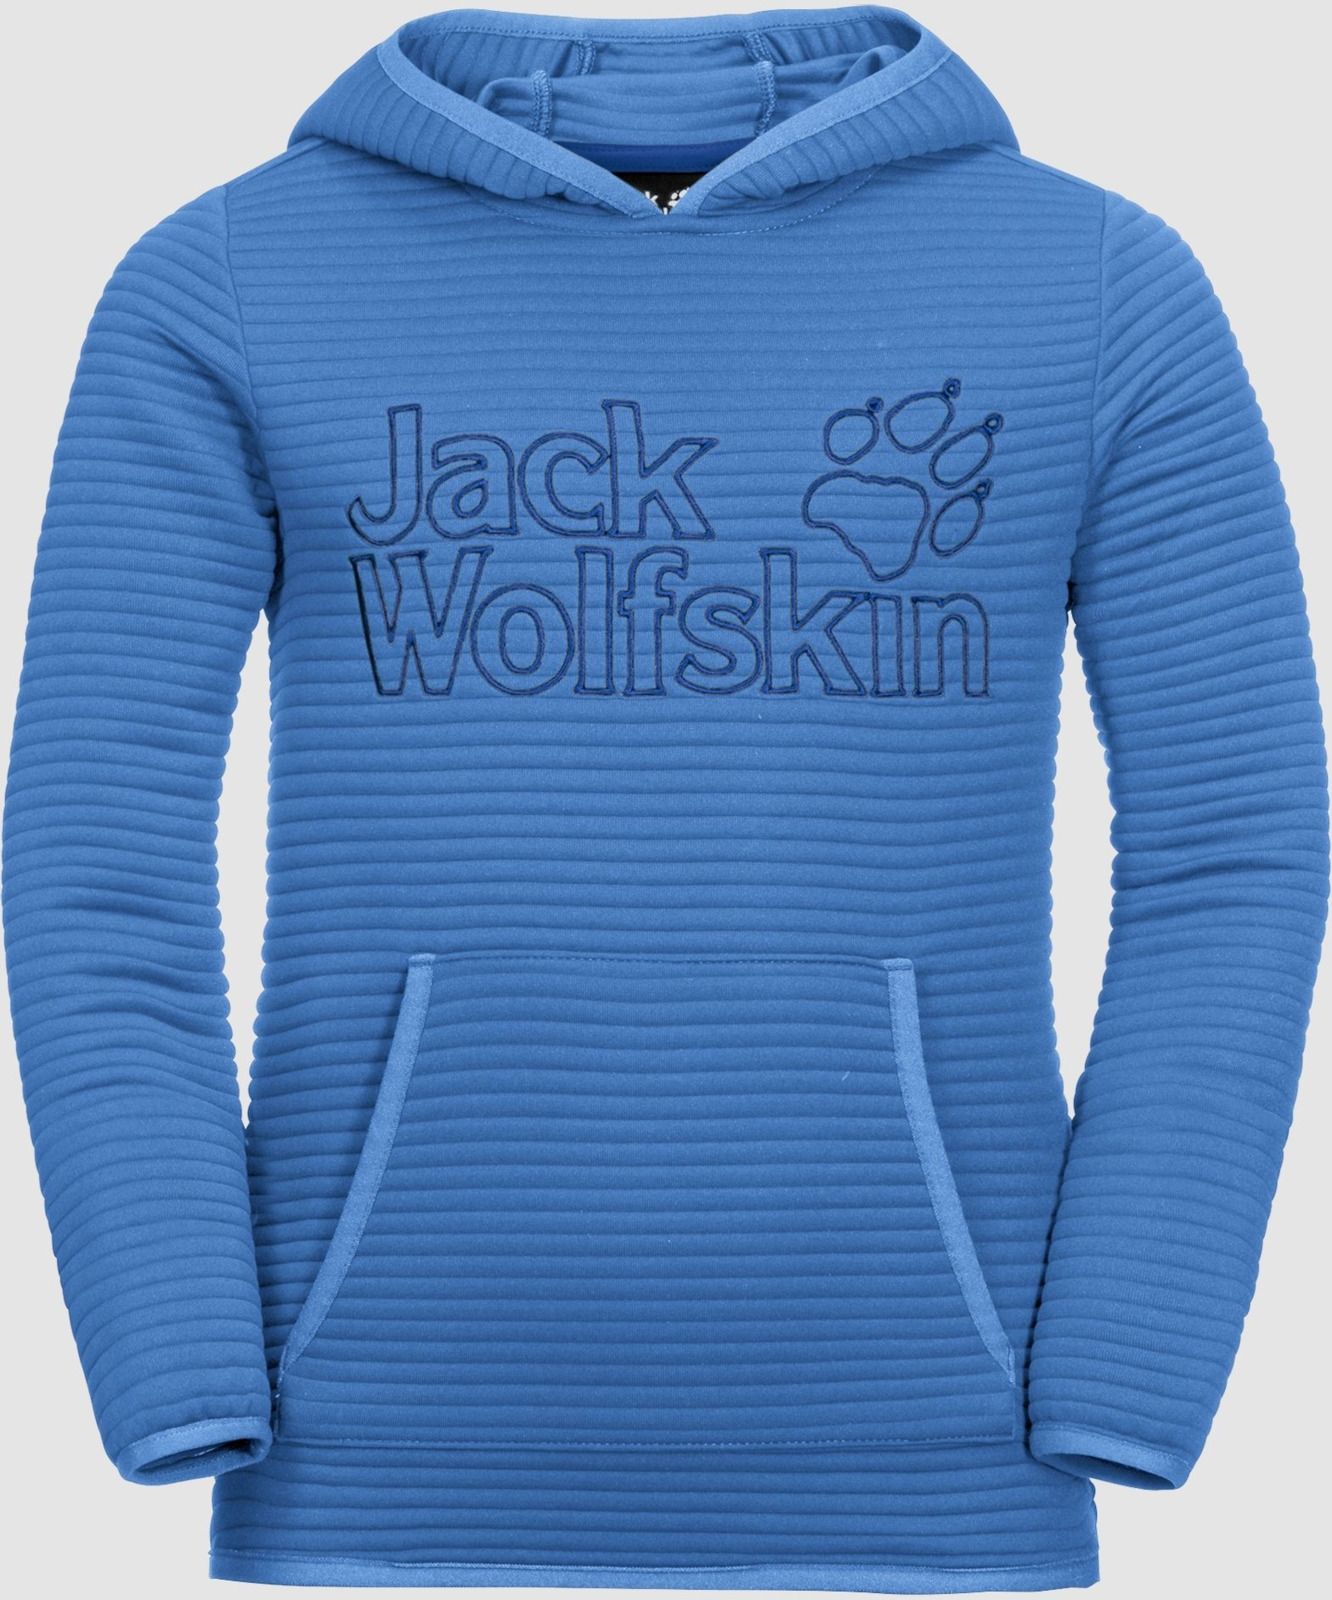   Jack Wolfskin Modesto Hoody, : -. 1607721-1515.  176/182